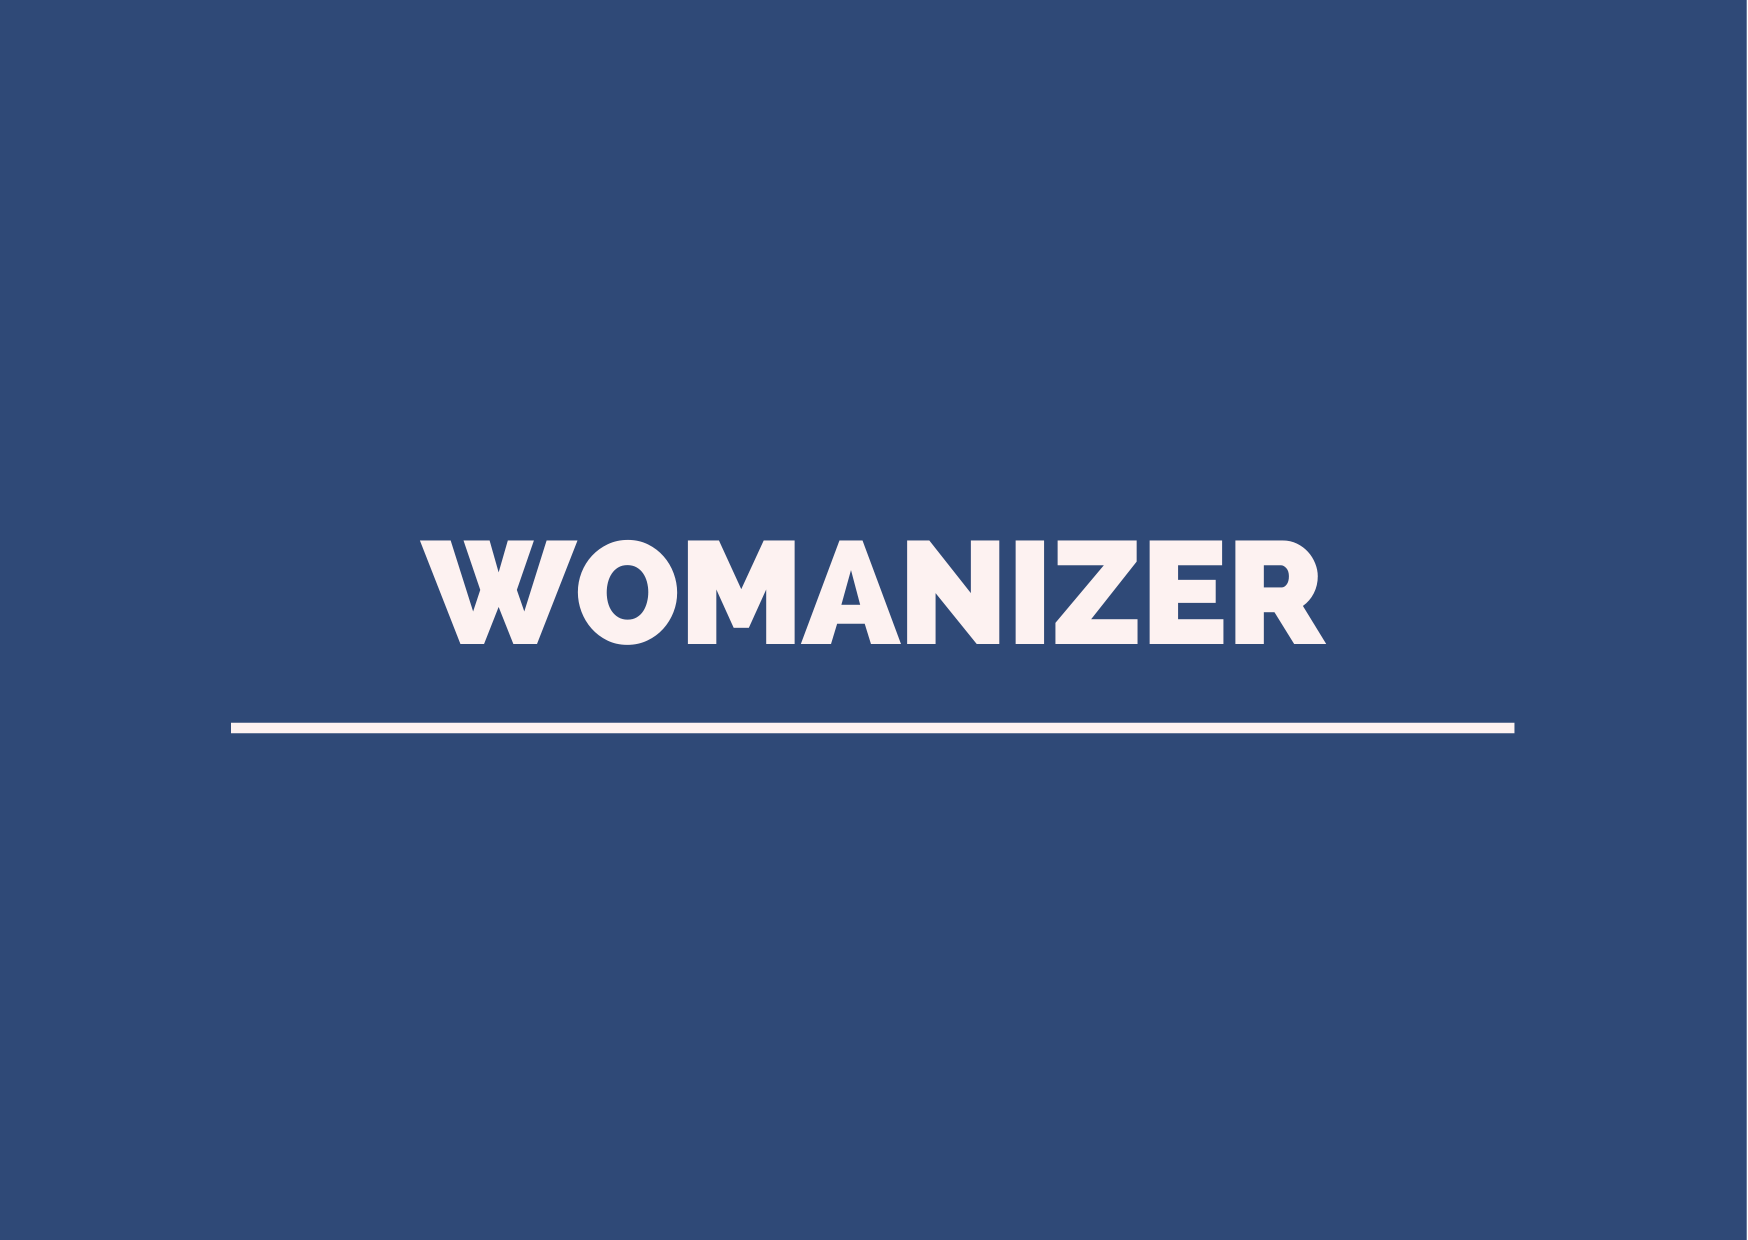 womanizer text